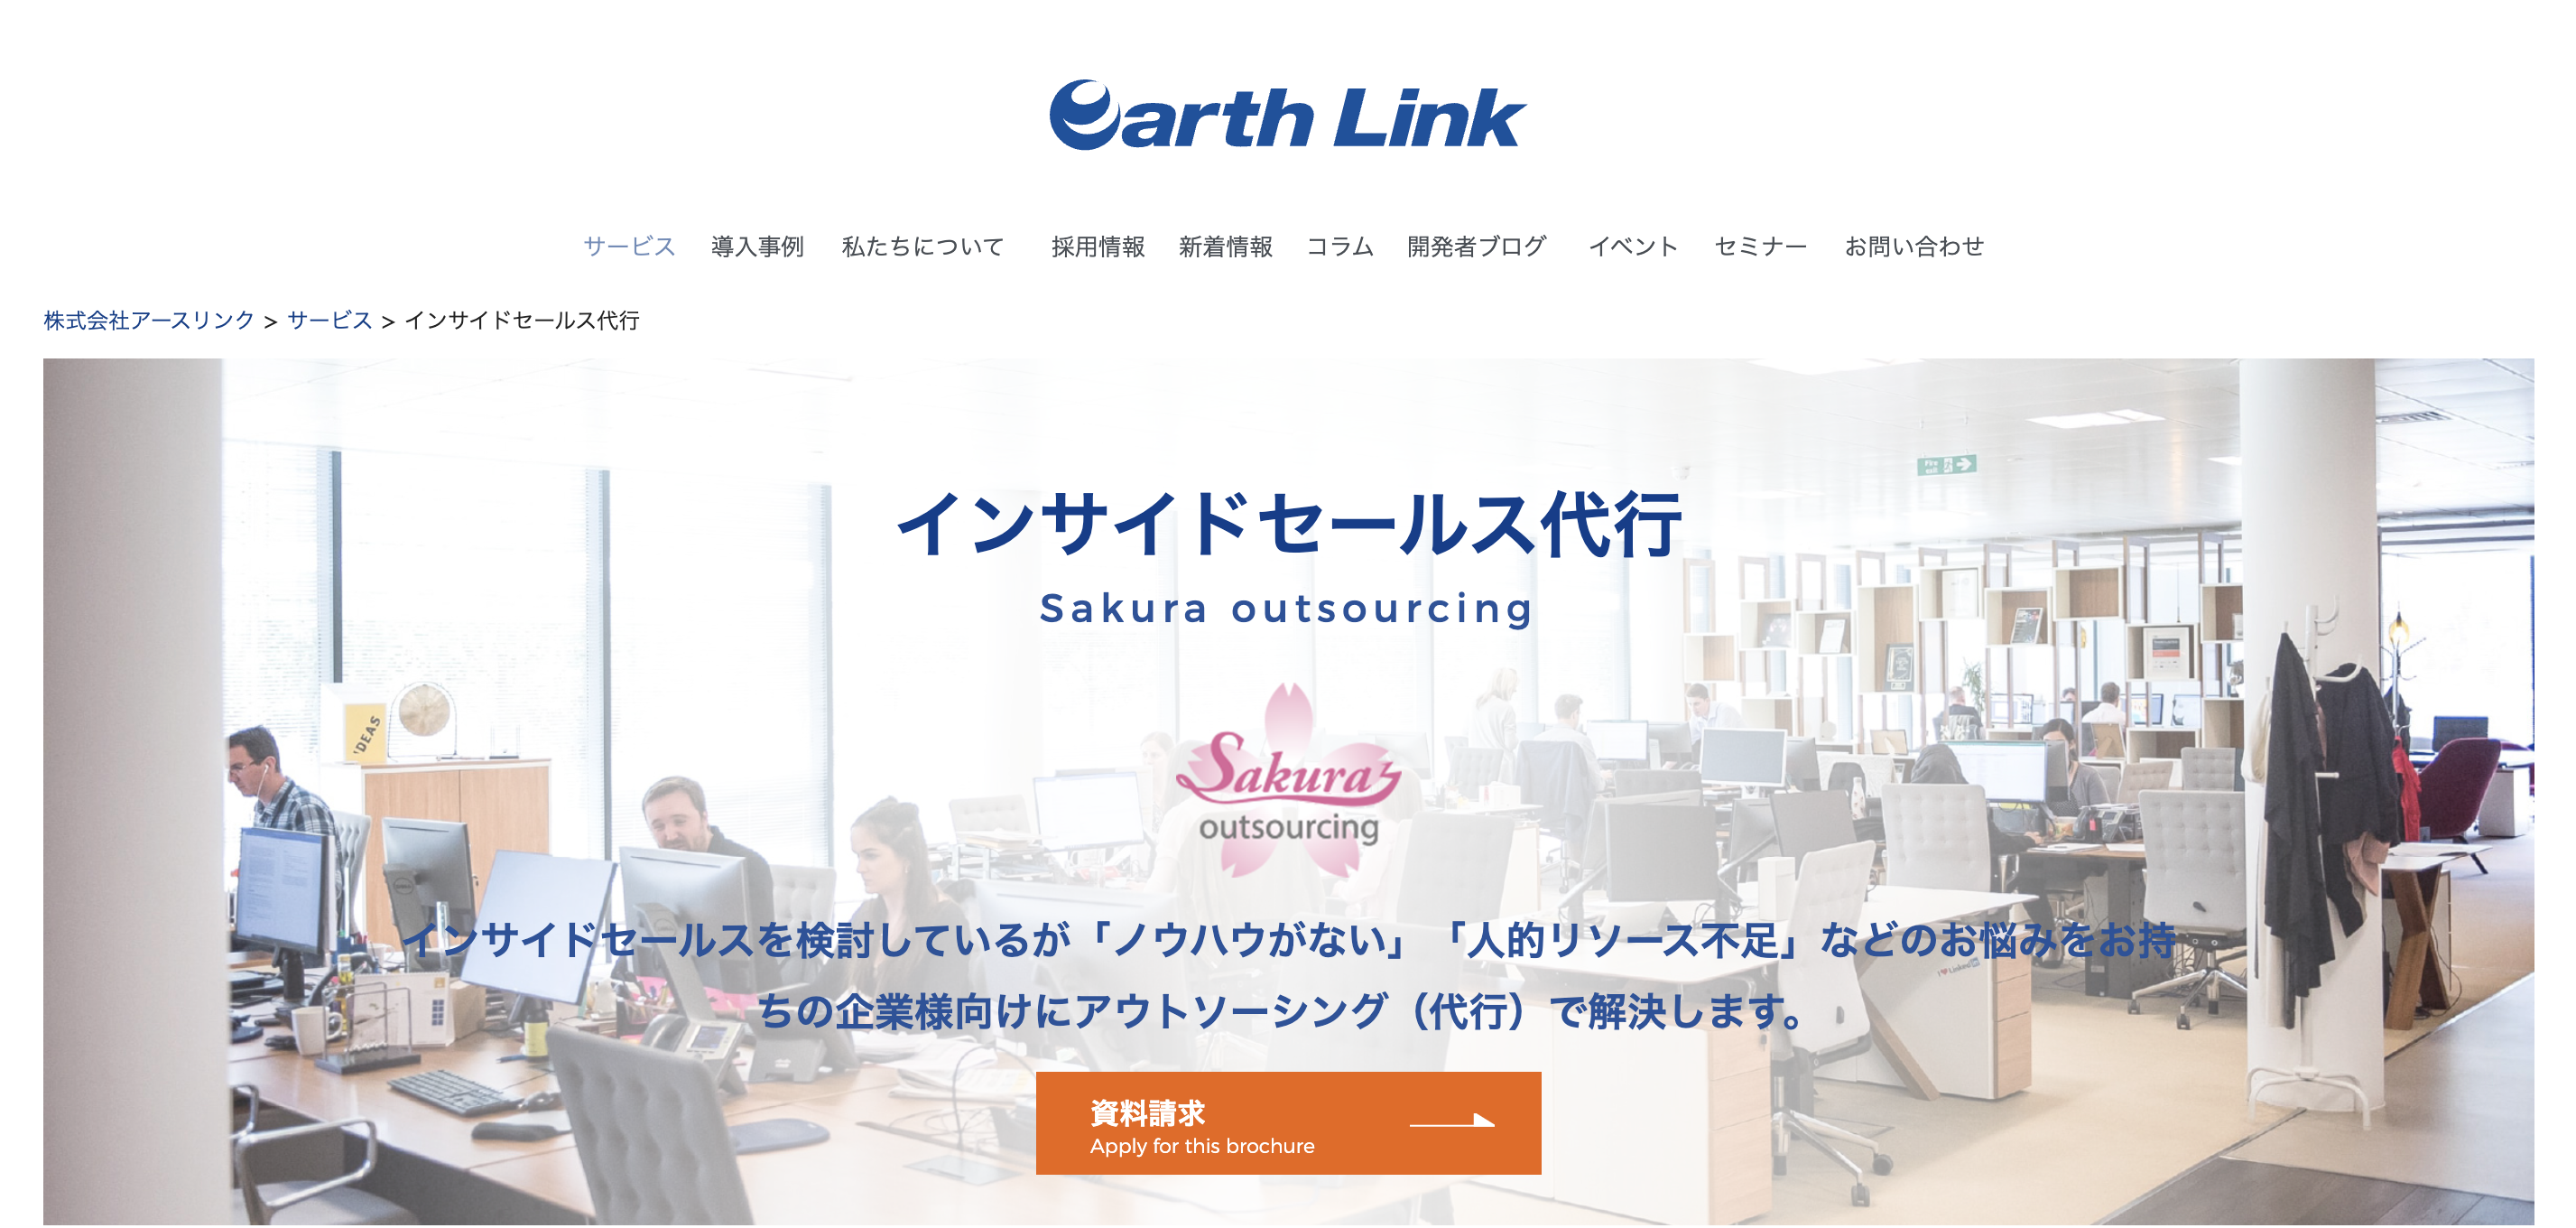 1.株式会社アースリンク「Sakura outsourcing」